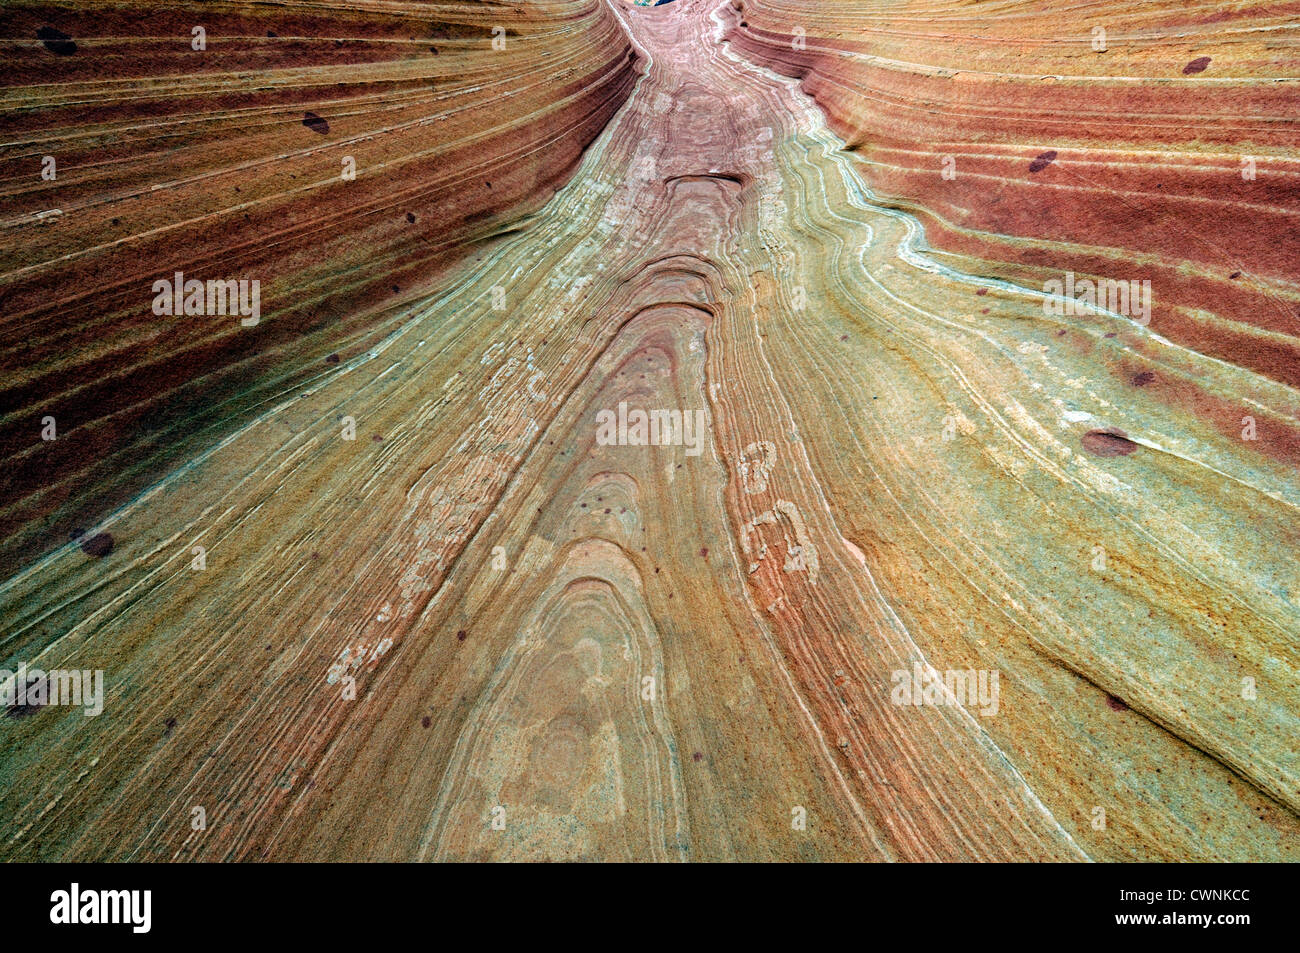 Ritorta rosso roccia arenaria formazione desert north coyote buttes utah erosione formazione geologica strano strano stranamente sagomate Foto Stock